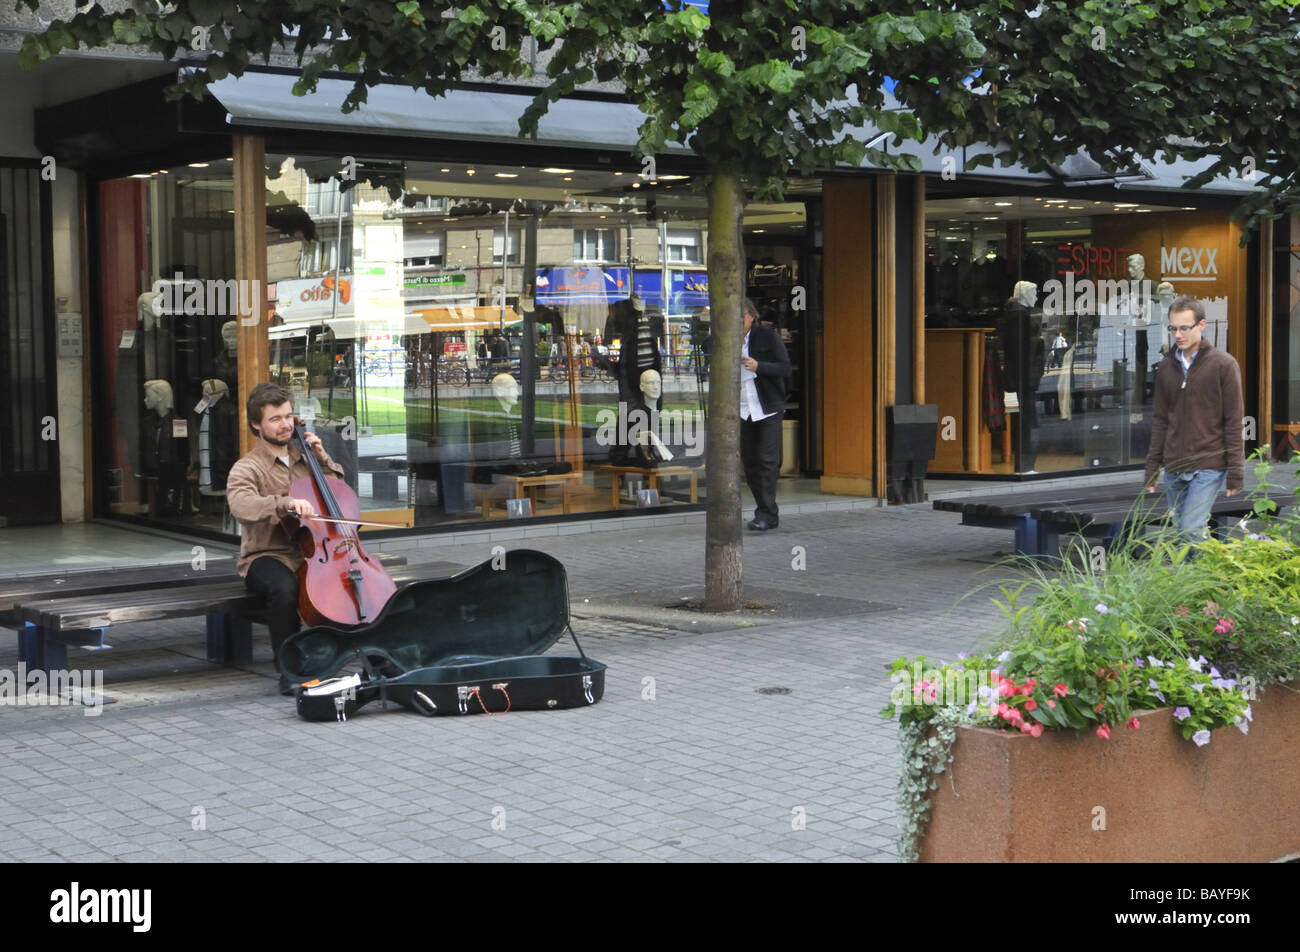 Musicista di strada violoncellista sulla strada di Amiens, Francia Foto Stock